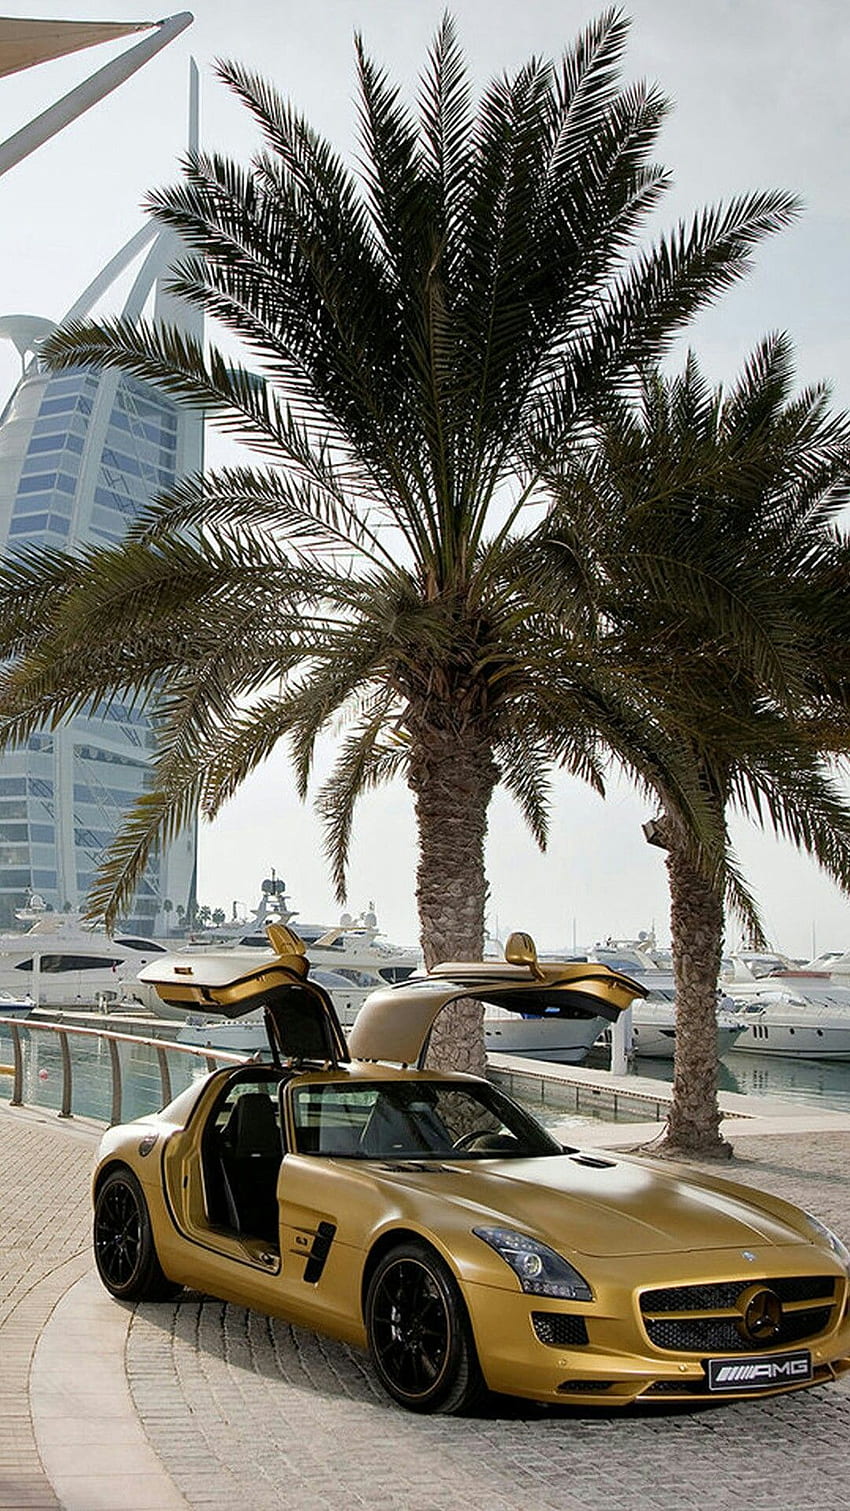 Hãy đến và thưởng thức những hình ảnh về những chiếc xe sang trọng tại Dubai, thể hiện đẳng cấp và sự xa hoa của thành phố. Từ những chiếc xe thể thao nhanh nhẹn đến các mẫu sedan cao cấp được trang bị không gian thoải mái và tiện nghi, Dubai sẽ làm cho bạn mê mẩn với vẻ đẹp của những chiếc xe đẳng cấp này. 